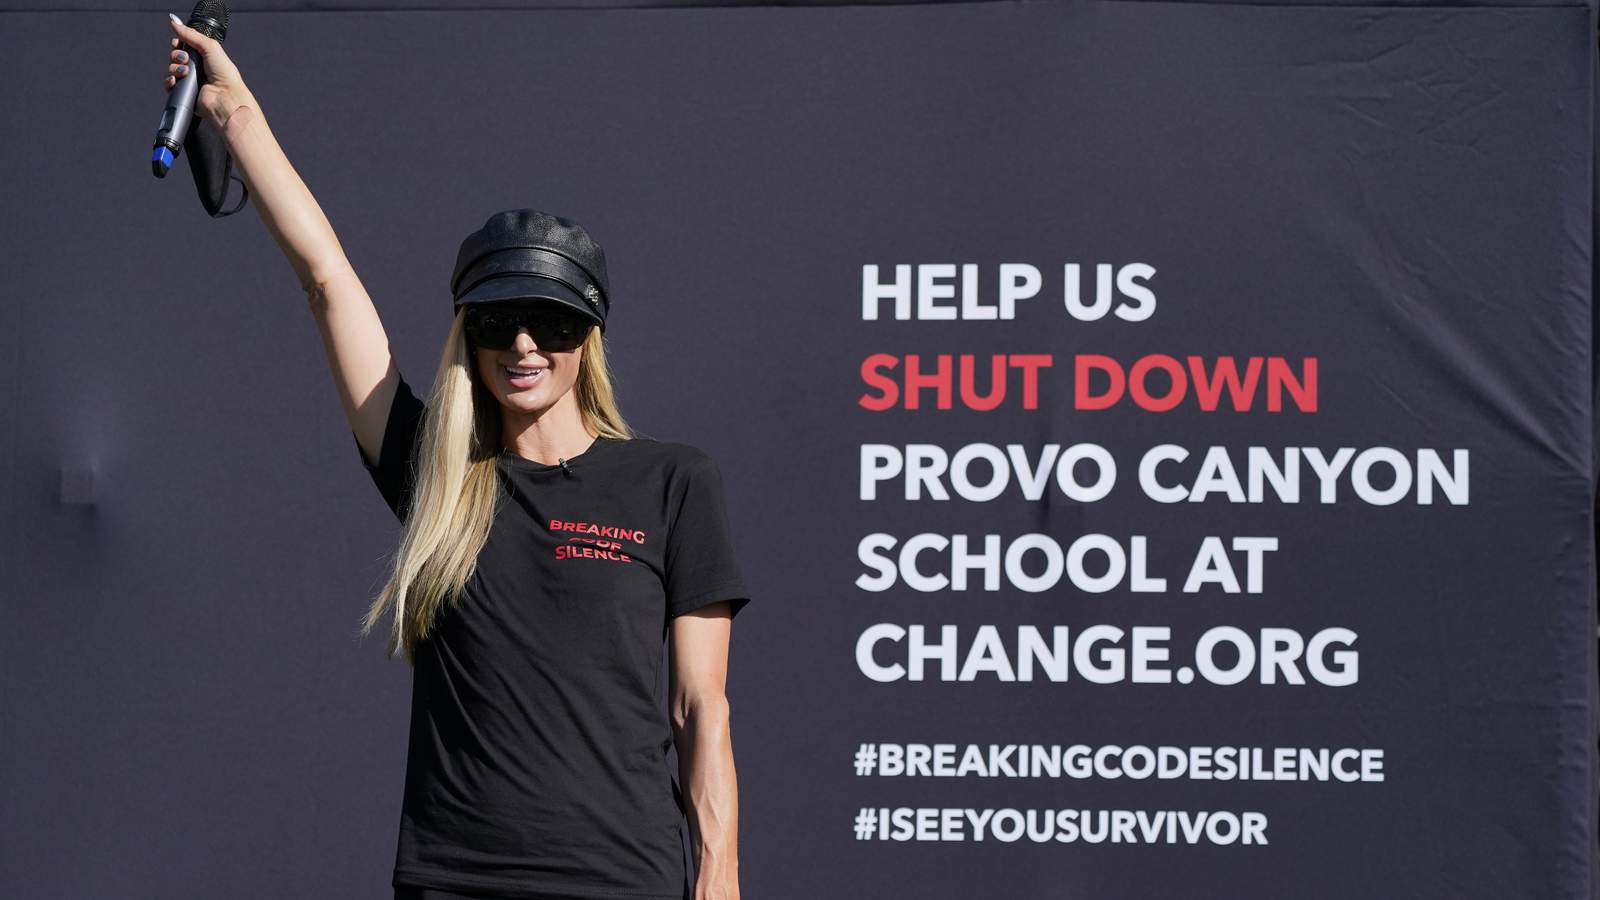 Paris Hilton protest calls for closure of Utah school